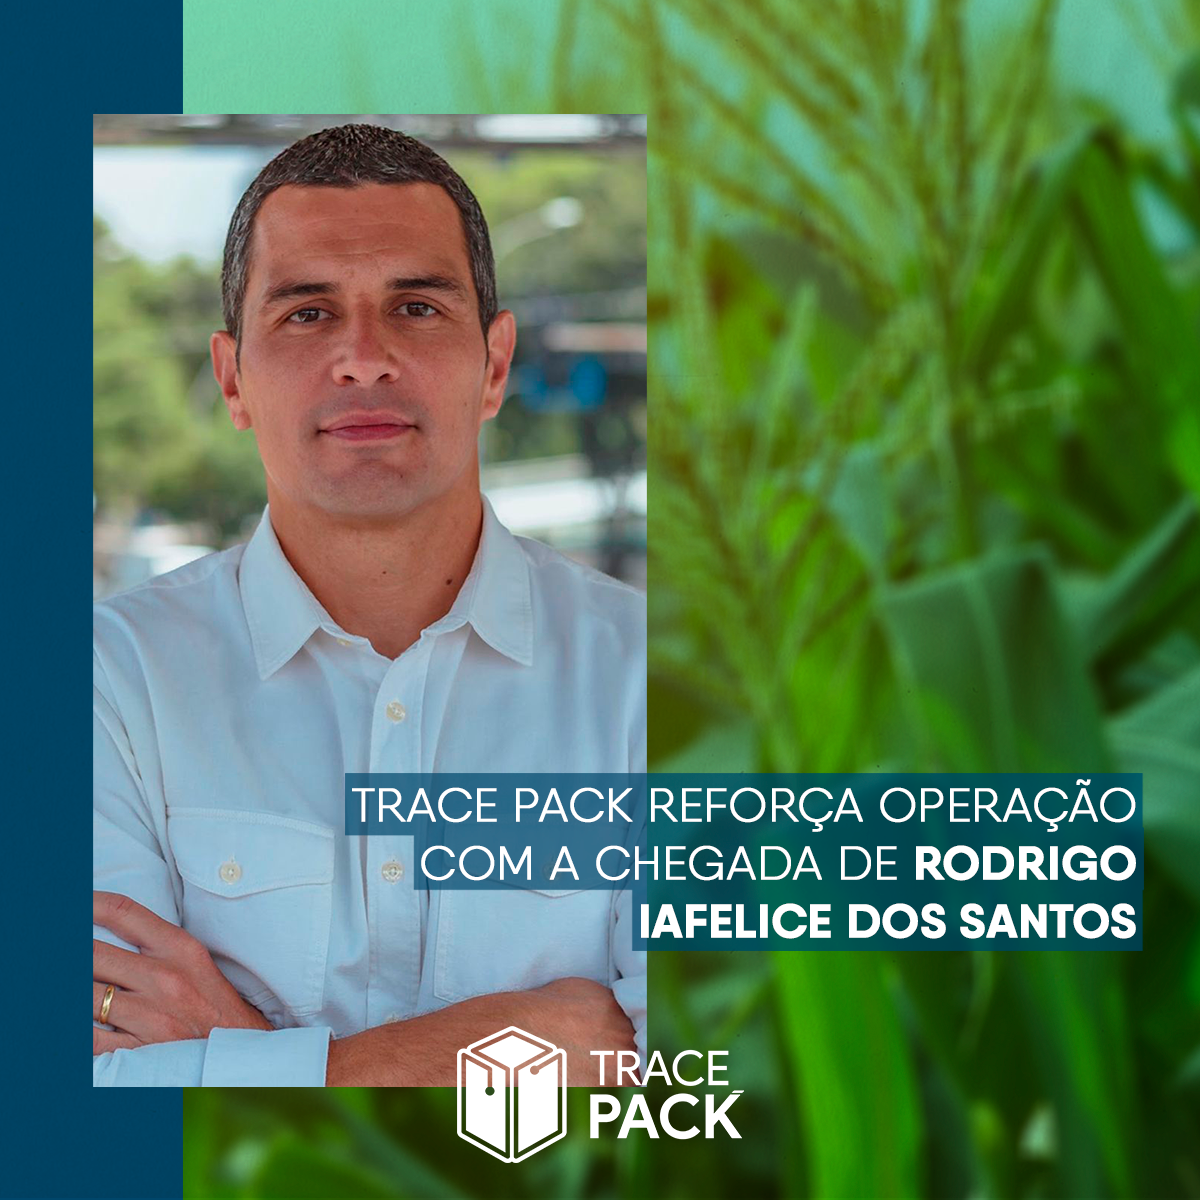 Trace Pack reforça estratégia com a chegada de Rodrigo Iafelice dos Santos